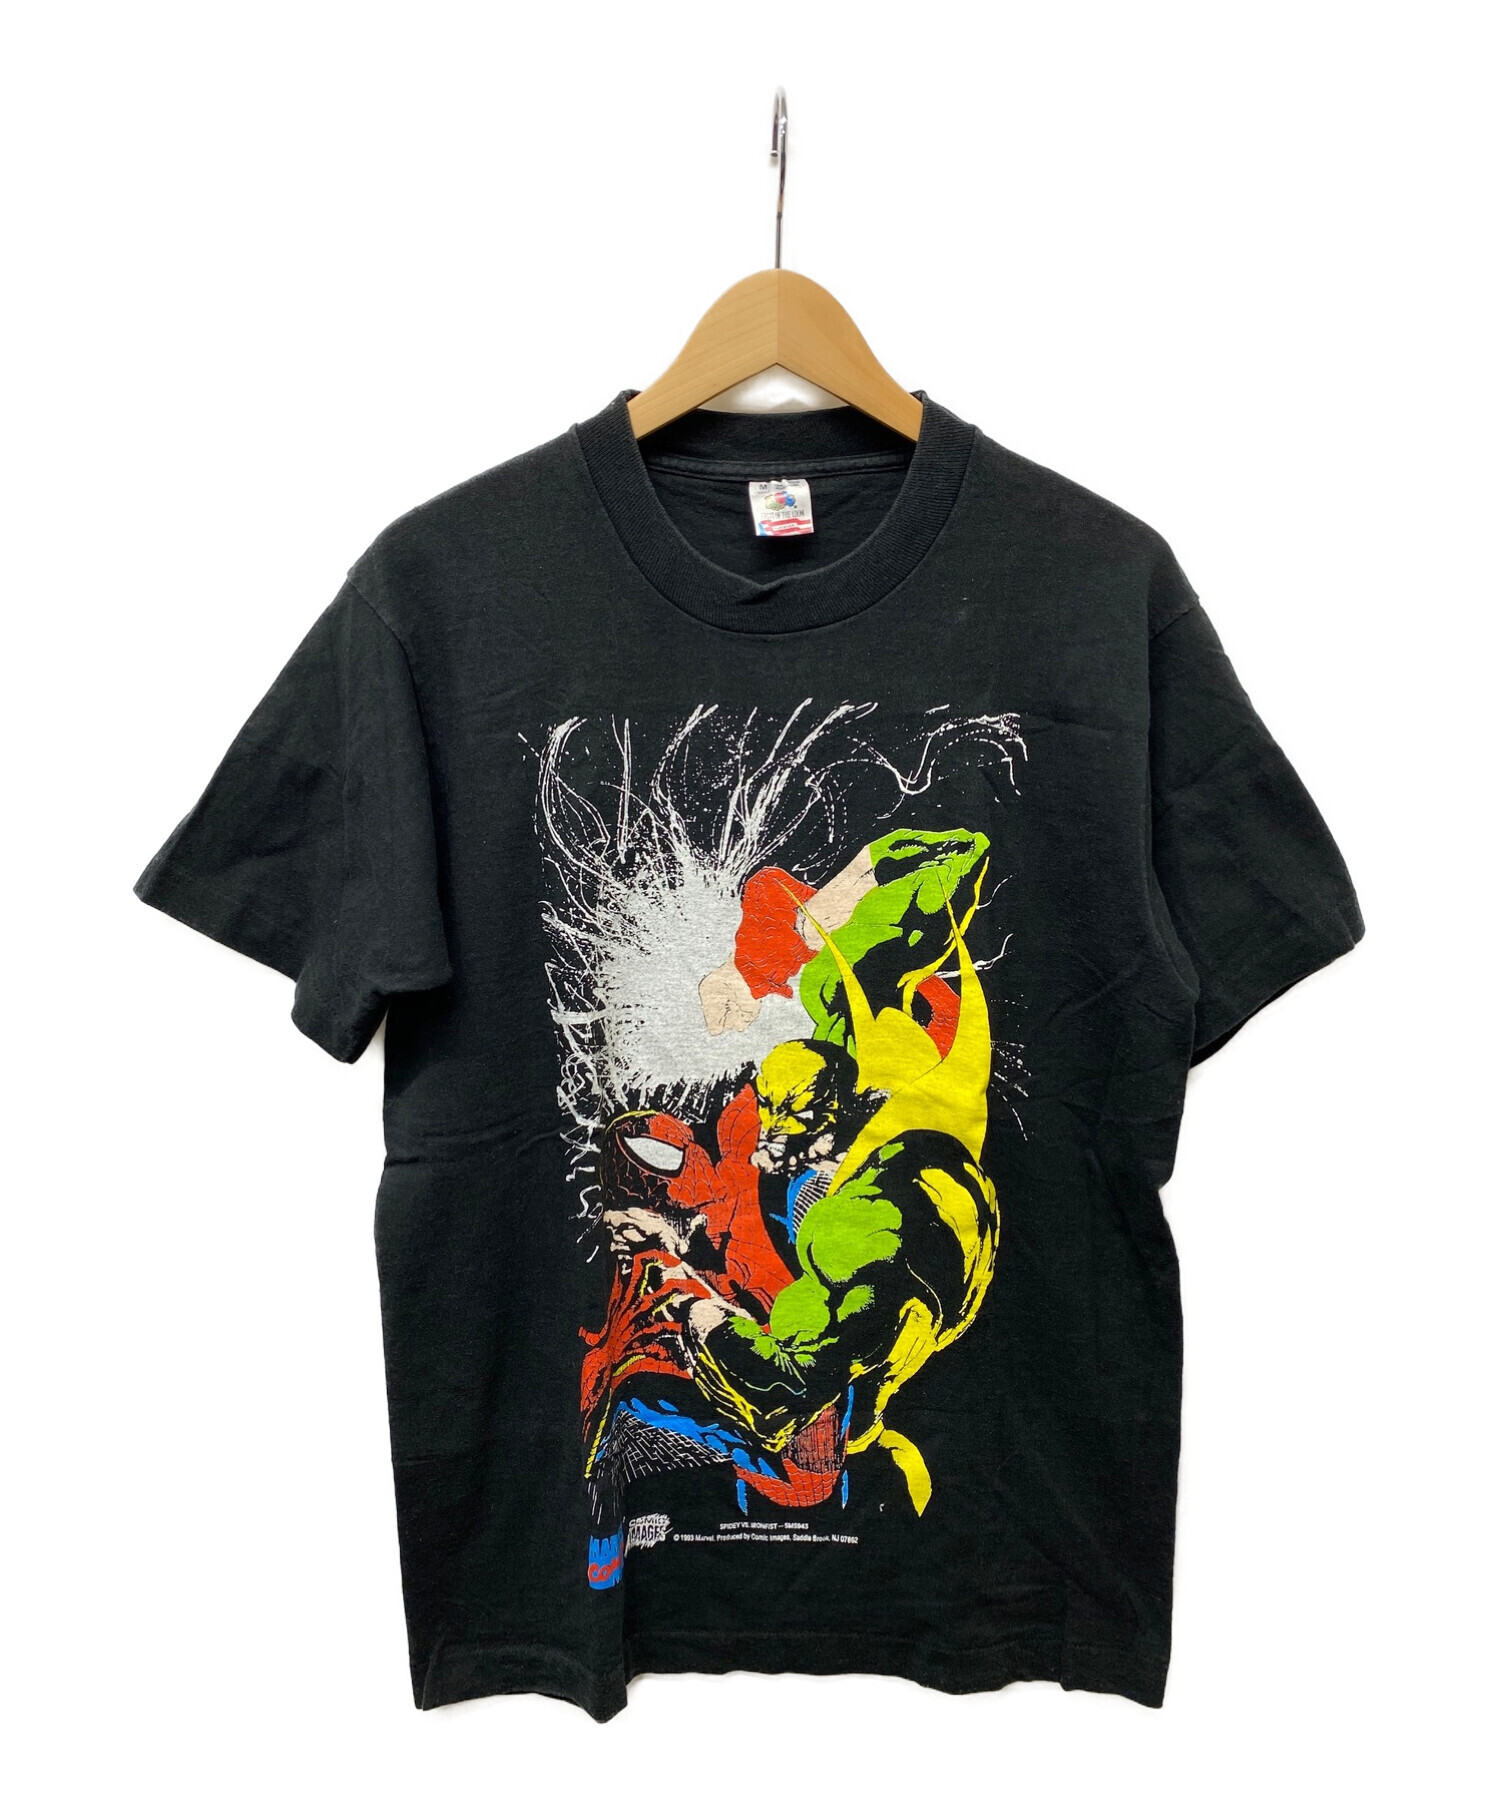 FRUIT OF THE LOOM (フルーツオブザルーム) 90'sアメコミプリントTシャツ ブラック サイズ:M